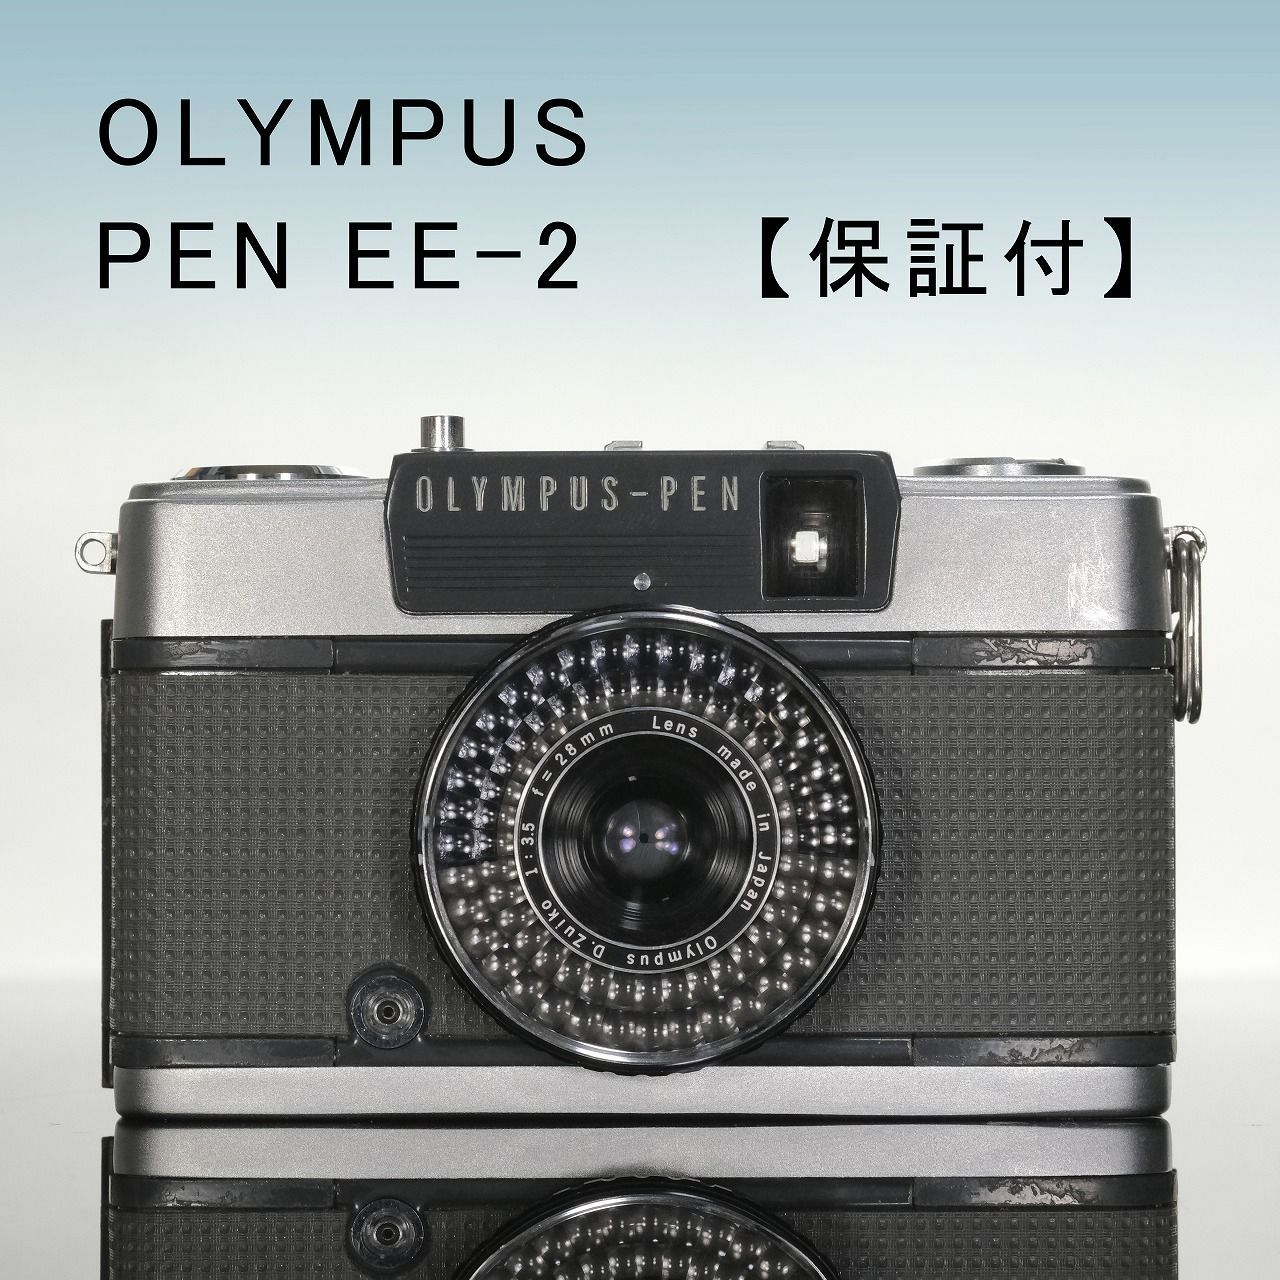 オリンパスペンEE-2 【 メンテ済】Olympus pen ee2 - フィルムカメラ